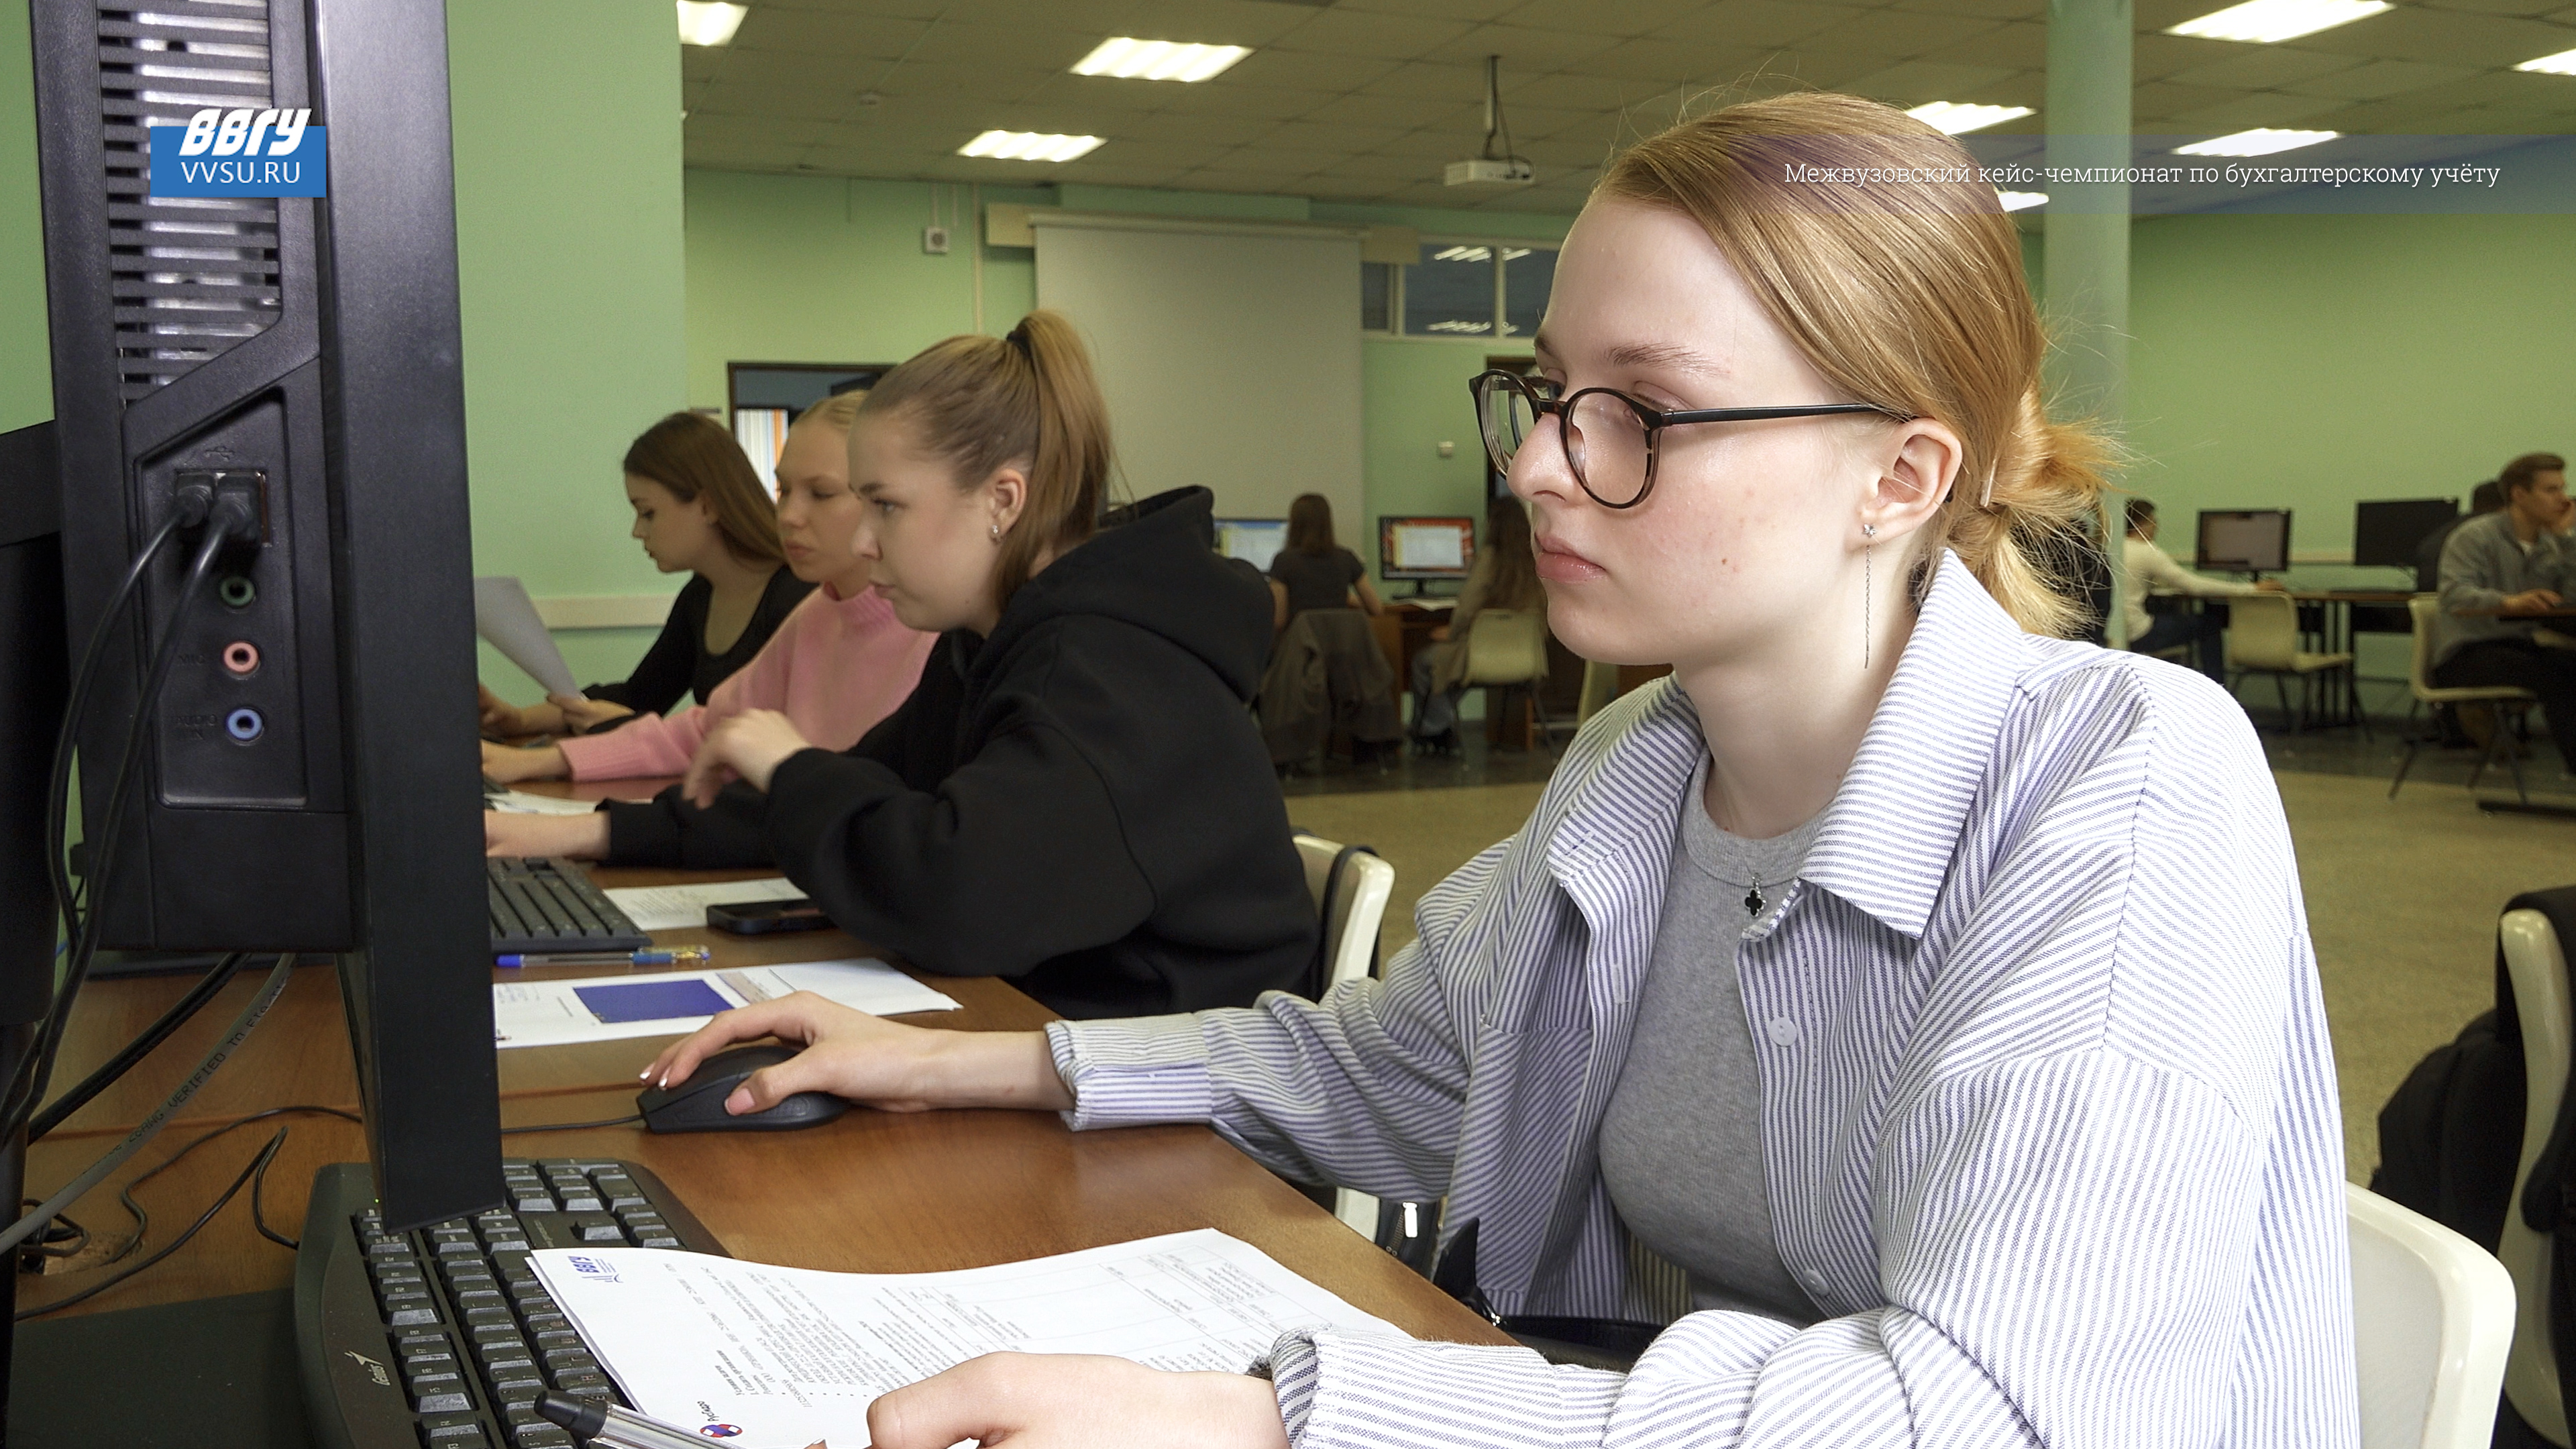 Студентов ВВГУ пригласили на оплачиваемую стажировку в «РусГидро»